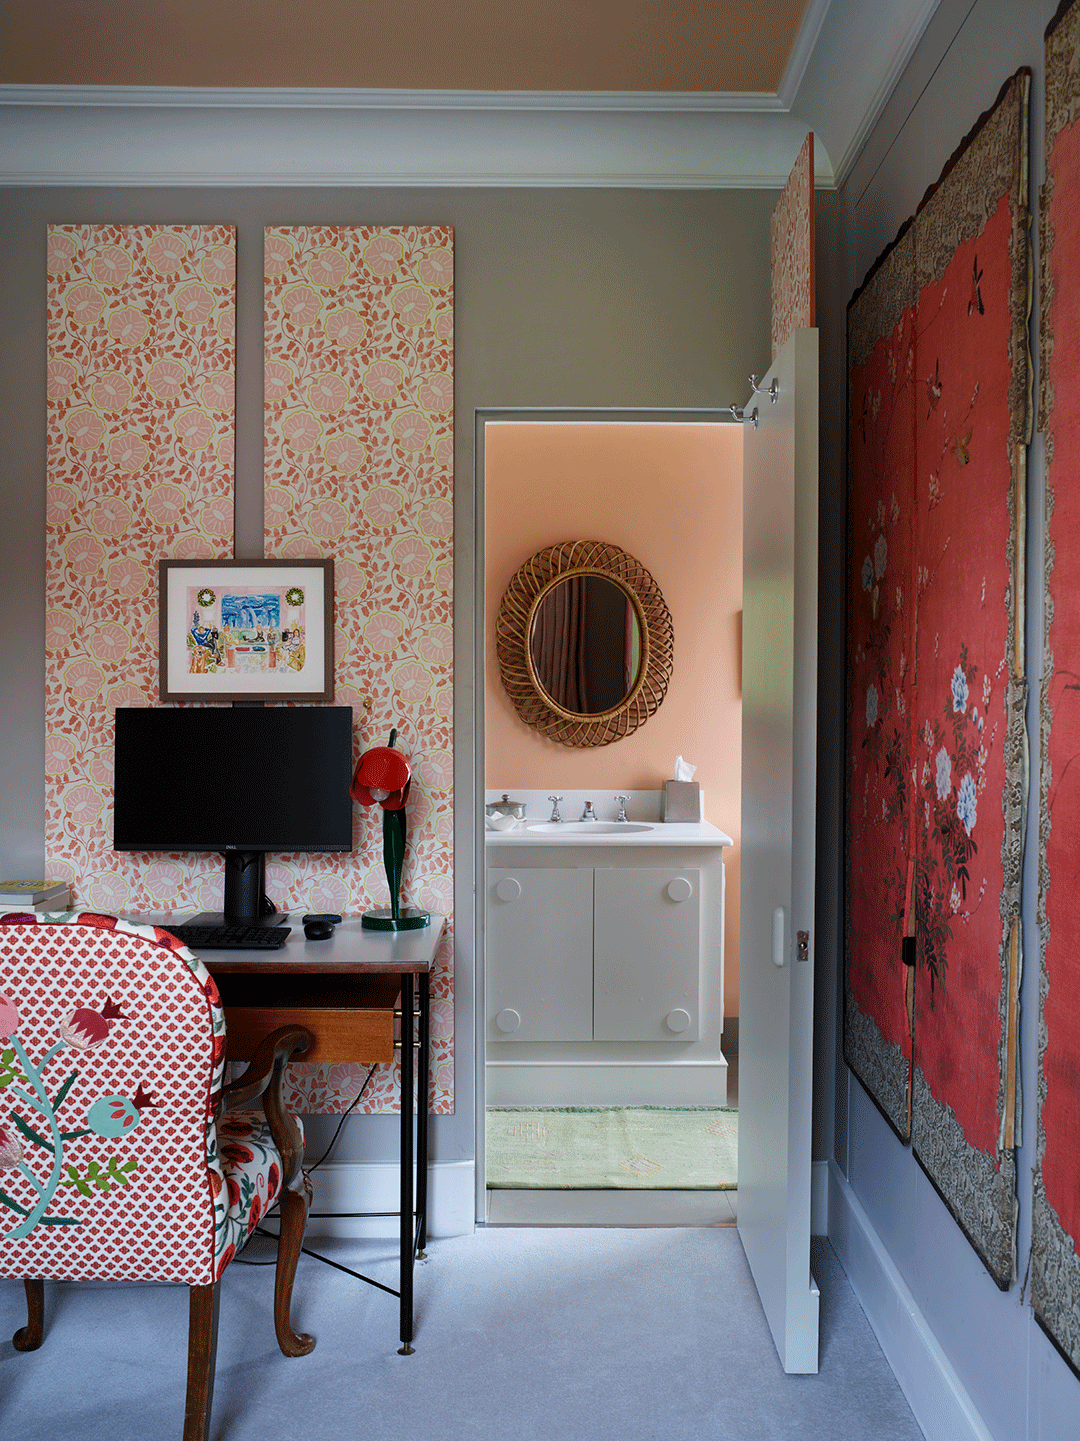 wallpapered panel over doorway